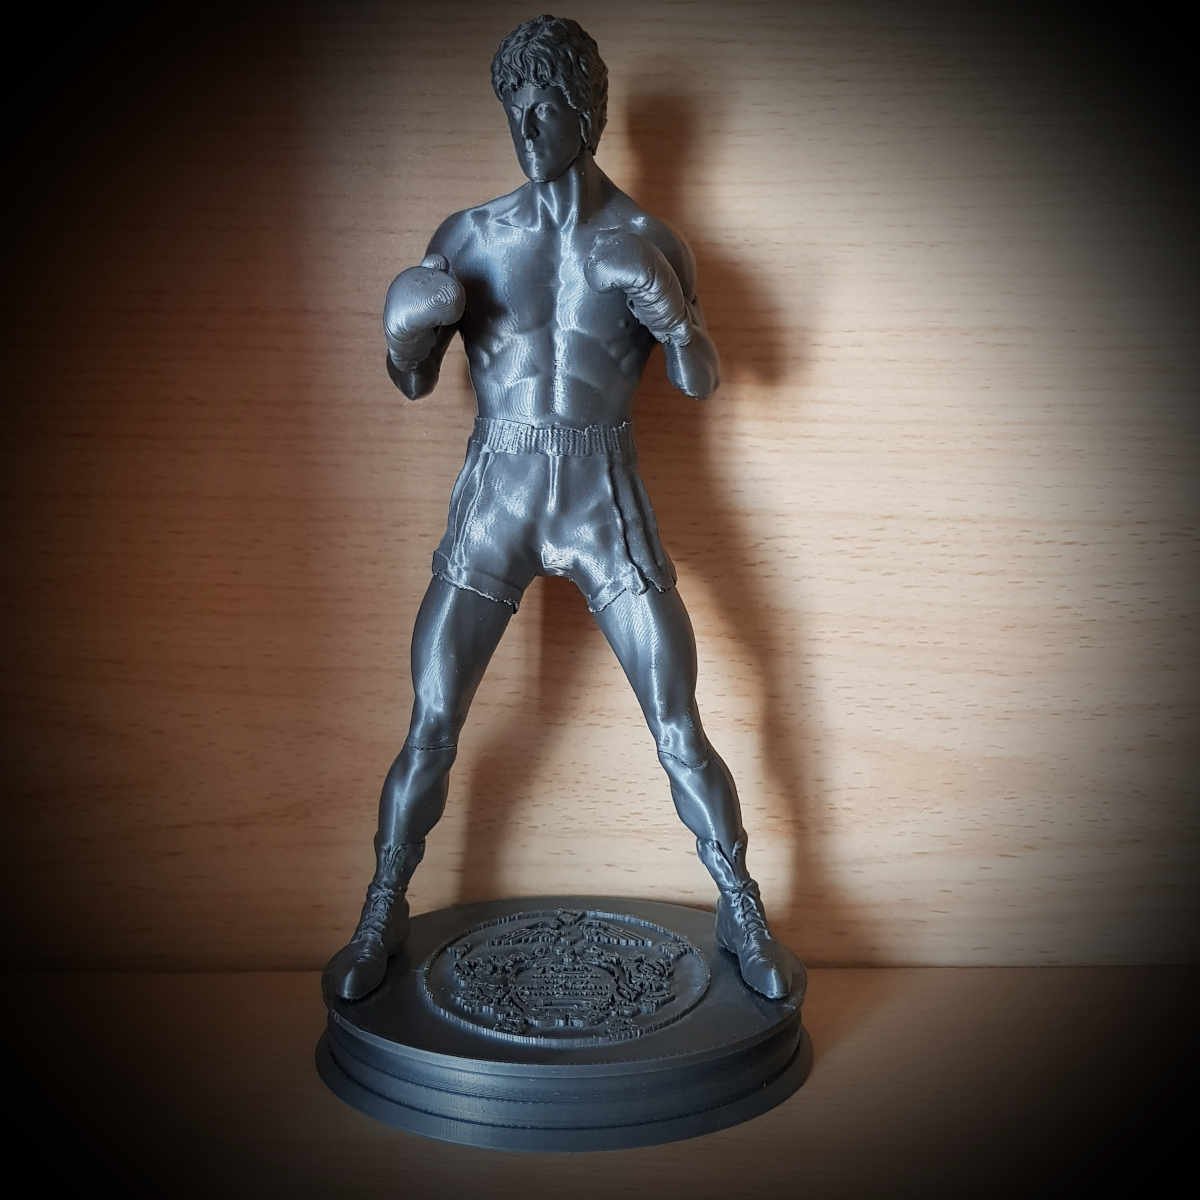 Rocky Balboa statuette